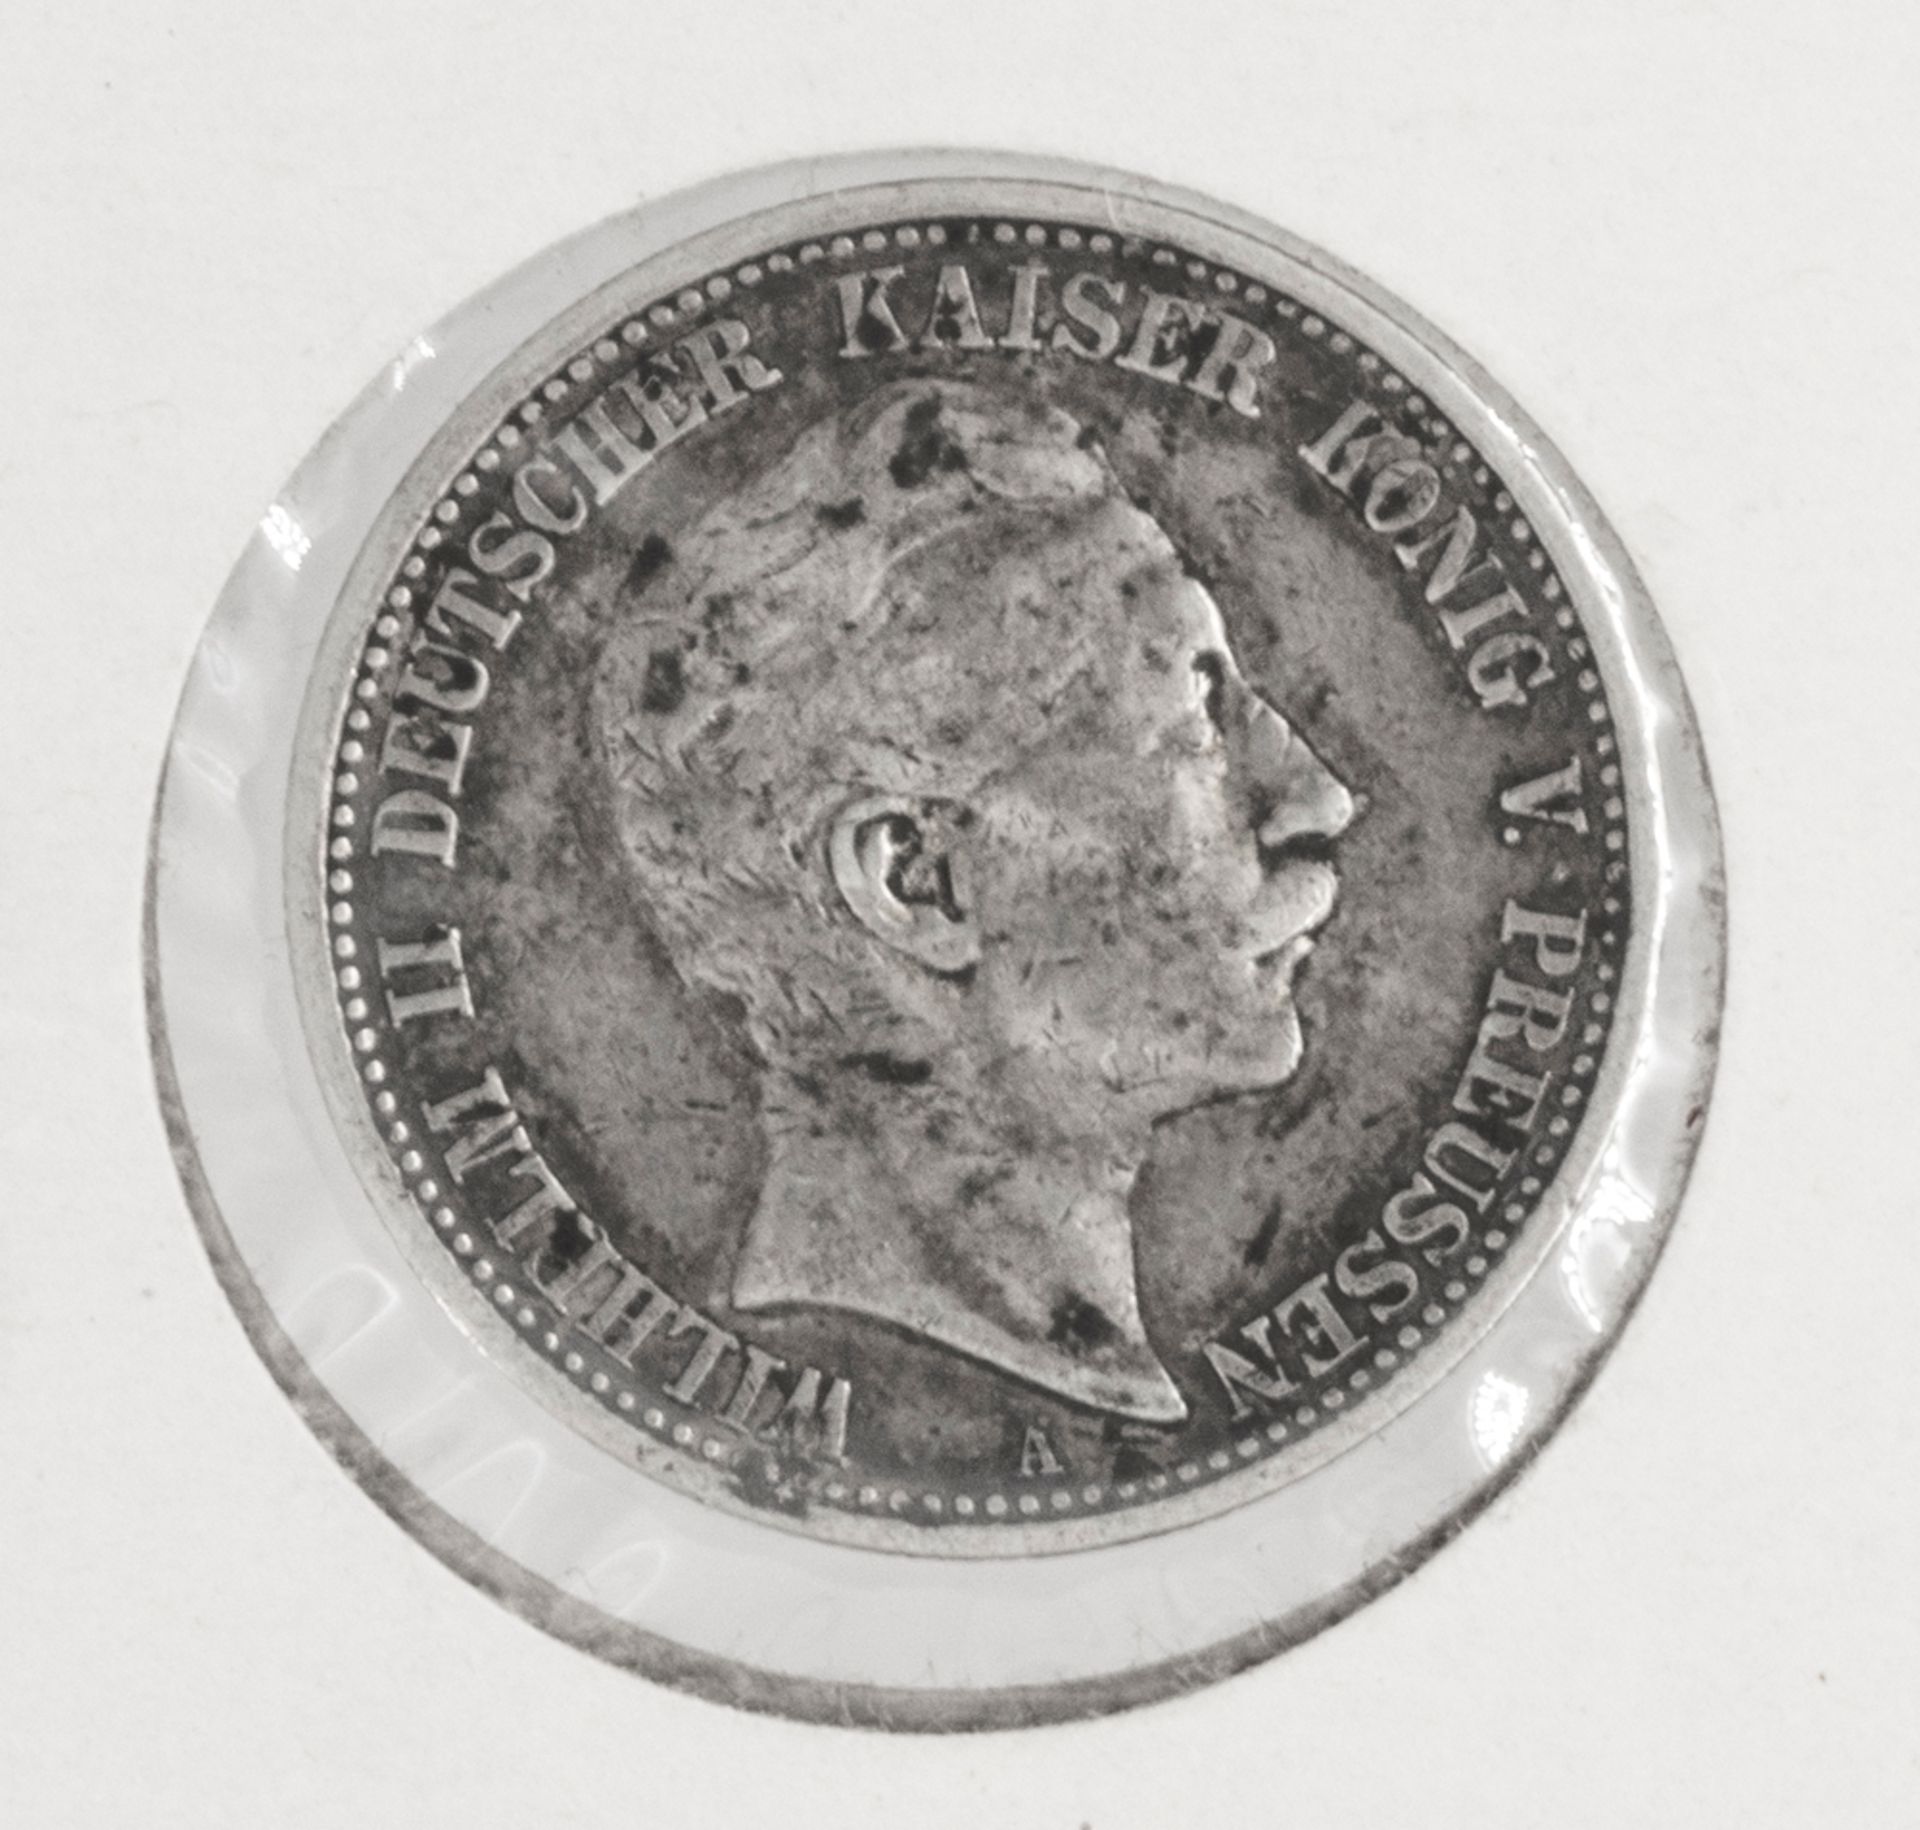 Deutsches Kaiserreich Preußen 1905 A, 2 Mark - Silbermünze "Wilhelm II.". Erhaltung: ss.